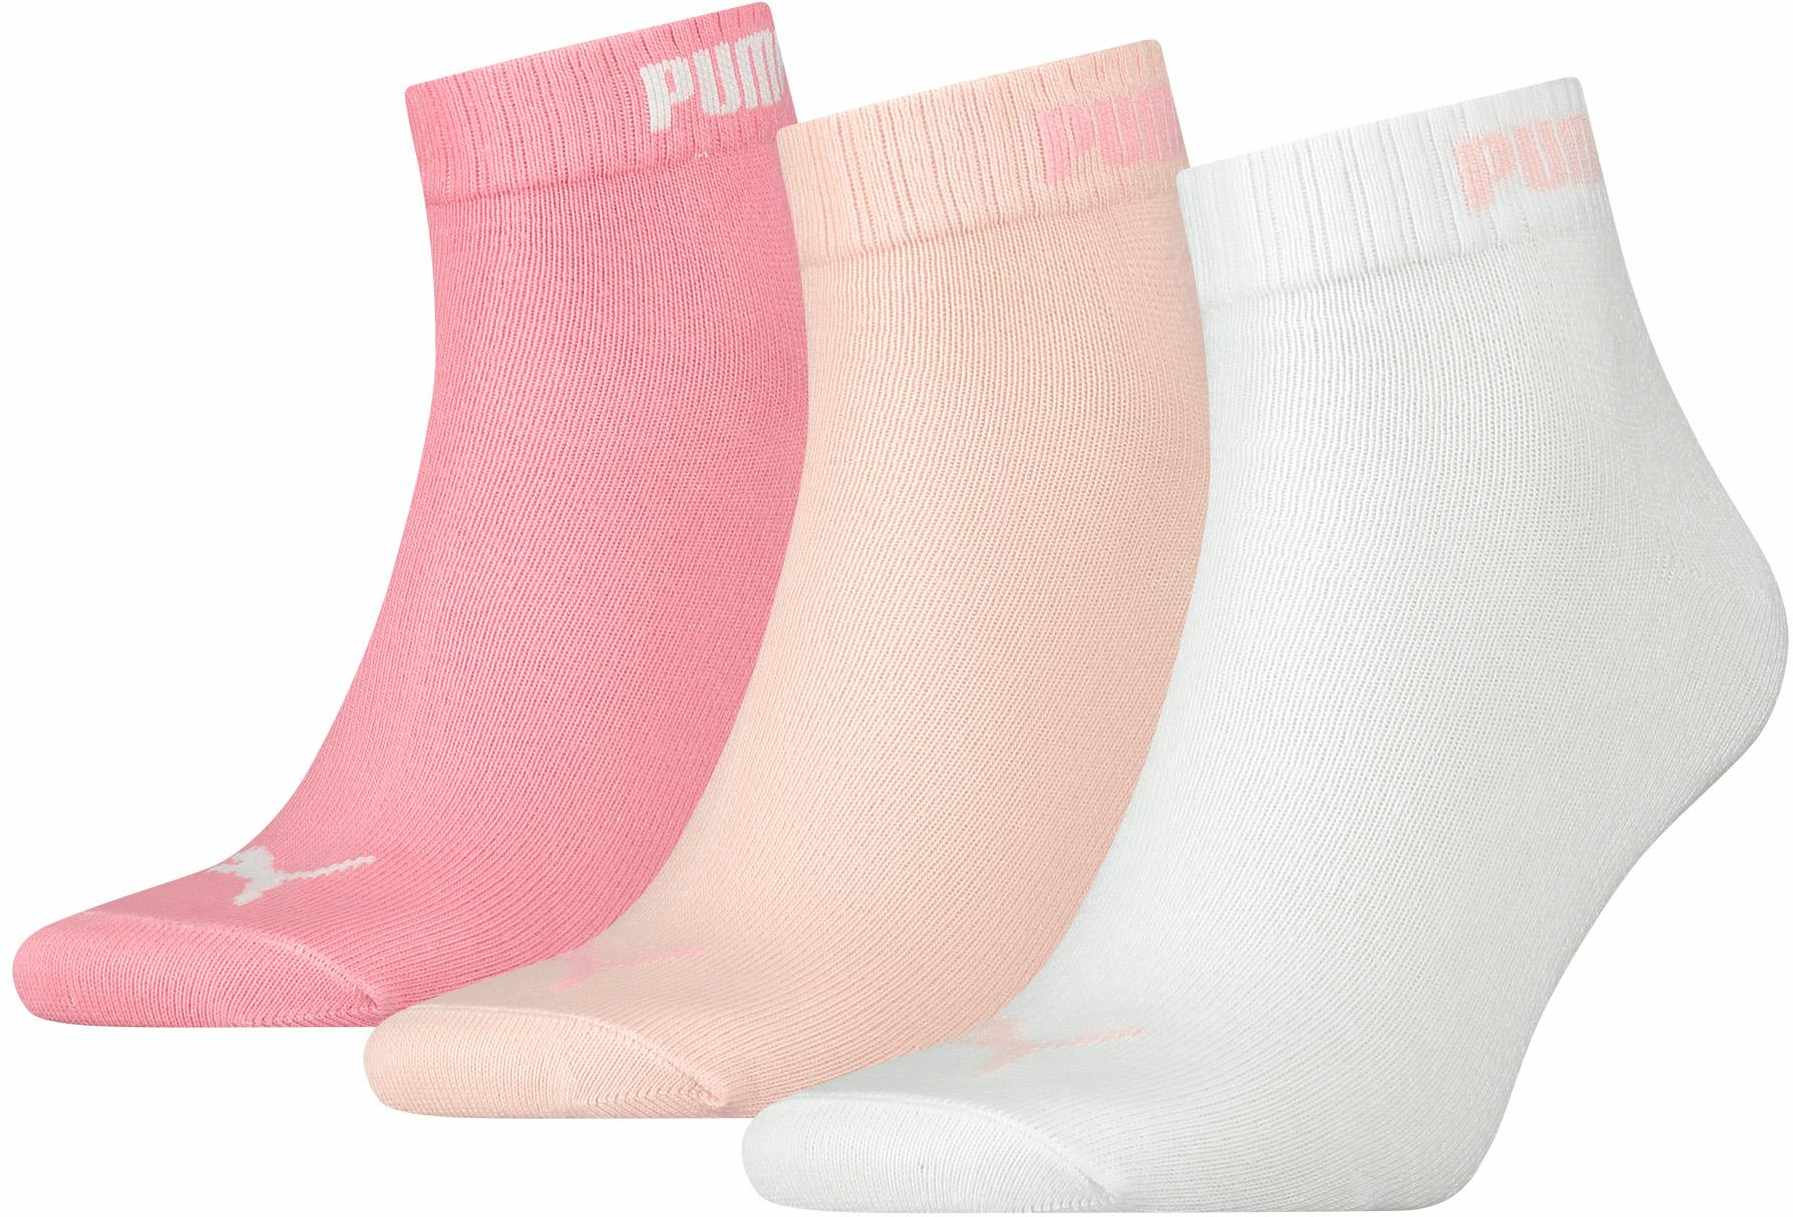 3PPK ROSA-KURZ - Socken